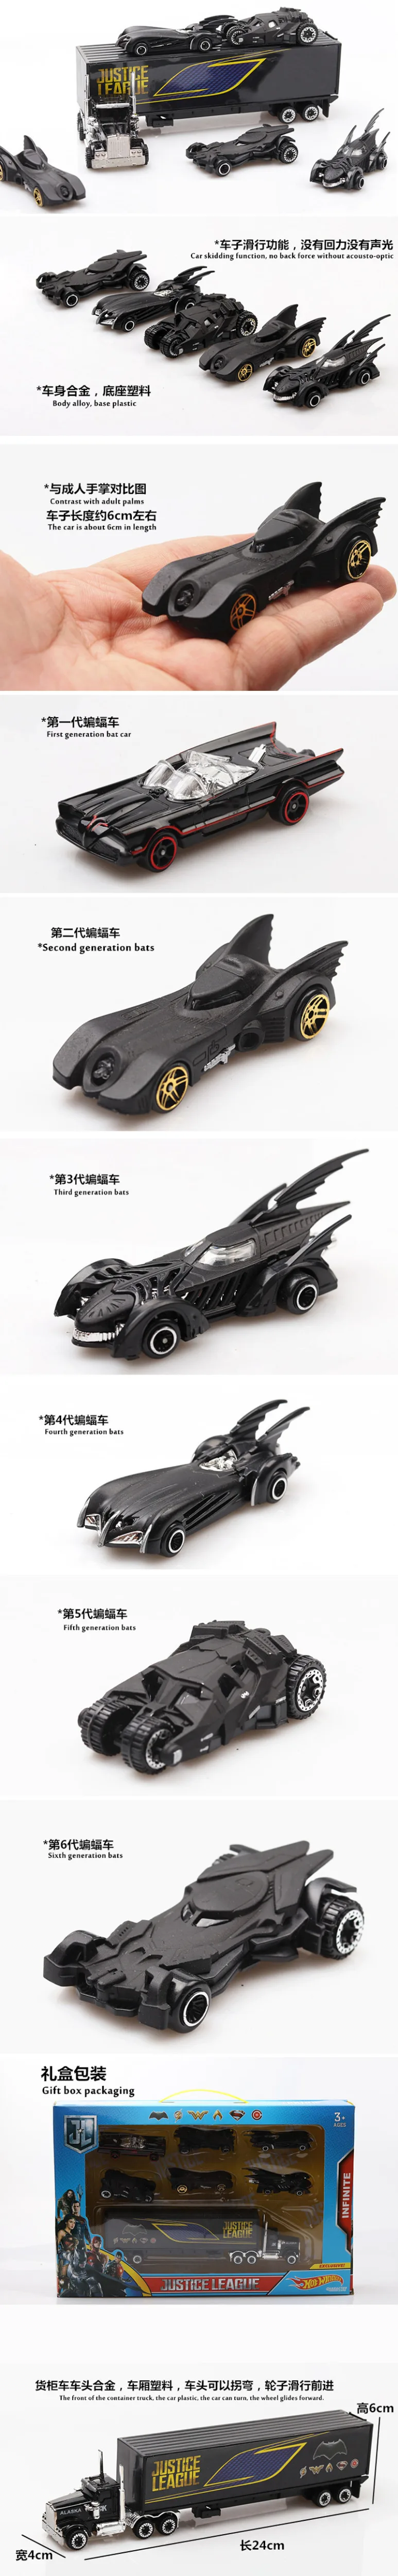 Сплав гоночный супер игрушка автомобиль набор подарок тайна черный подарочная коробка черная летучая мышь Игрушечная машина из сплава первый в шестом поколение игрушка, модель автомобиля